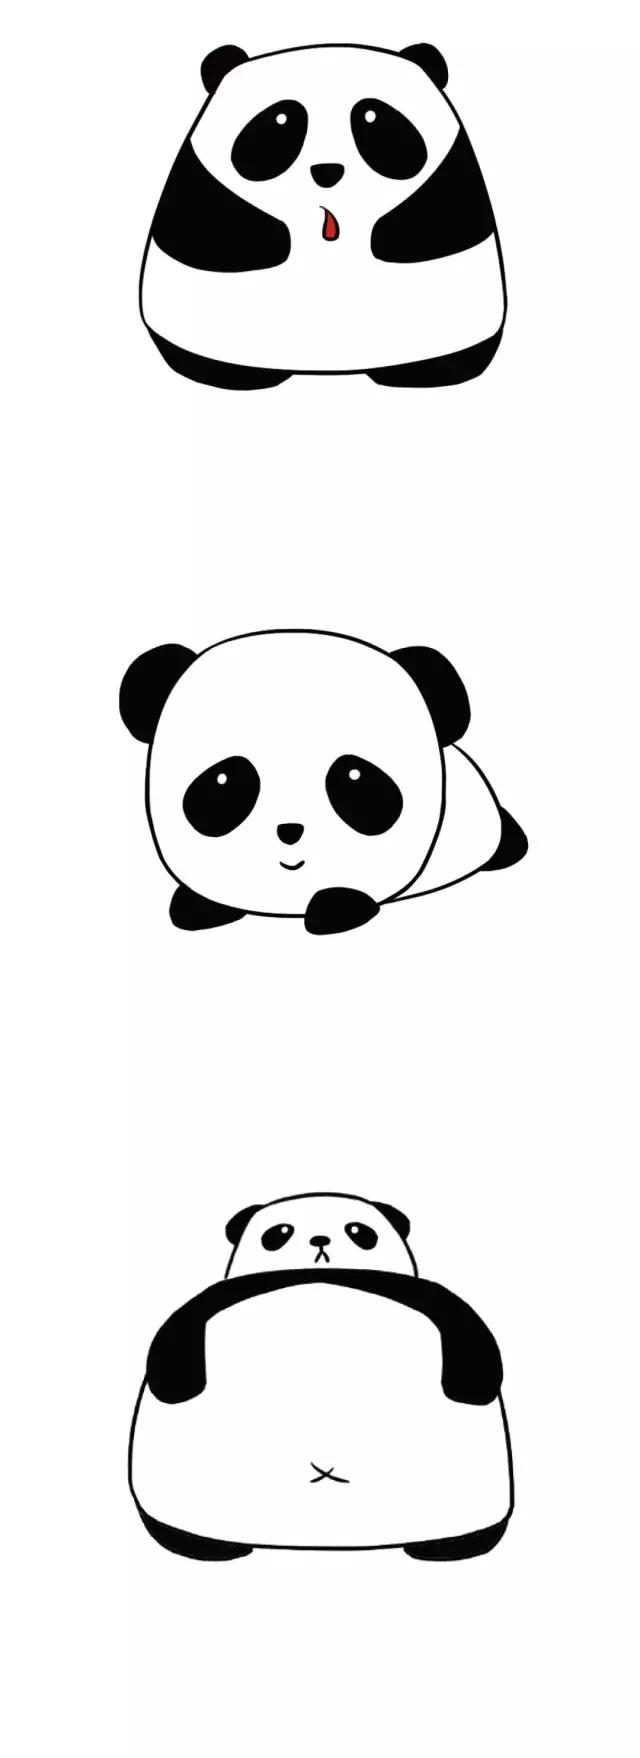 熊猫简笔画,教程及图片大全